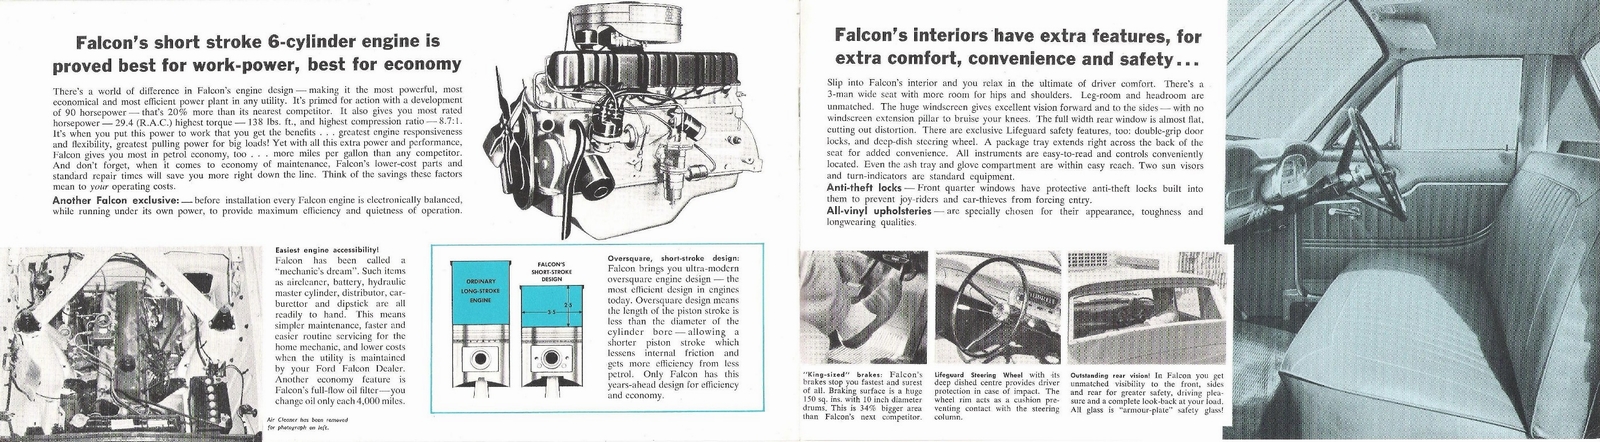 n_1961 Ford Falcon Utility-06-07.jpg